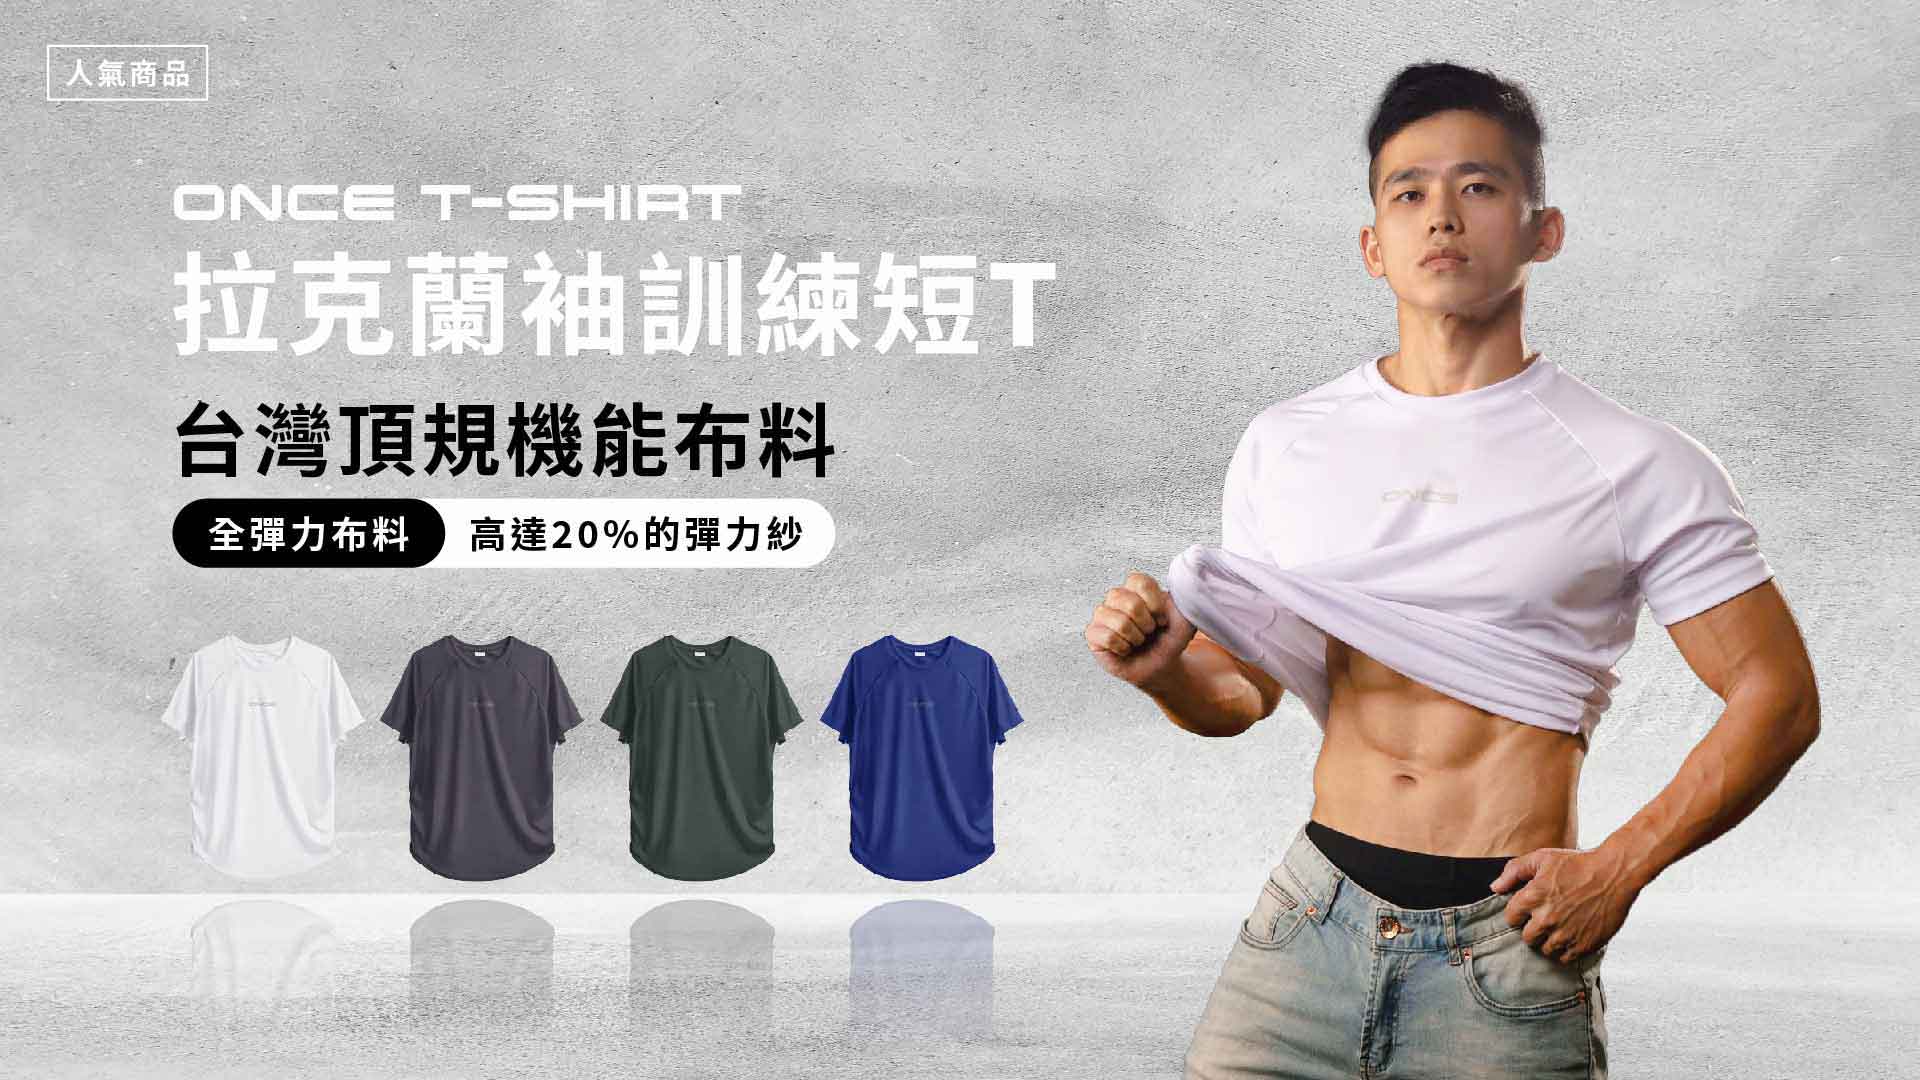 ONCE商城-拉克蘭袖訓練T-shirt-Once fitness 單次健身